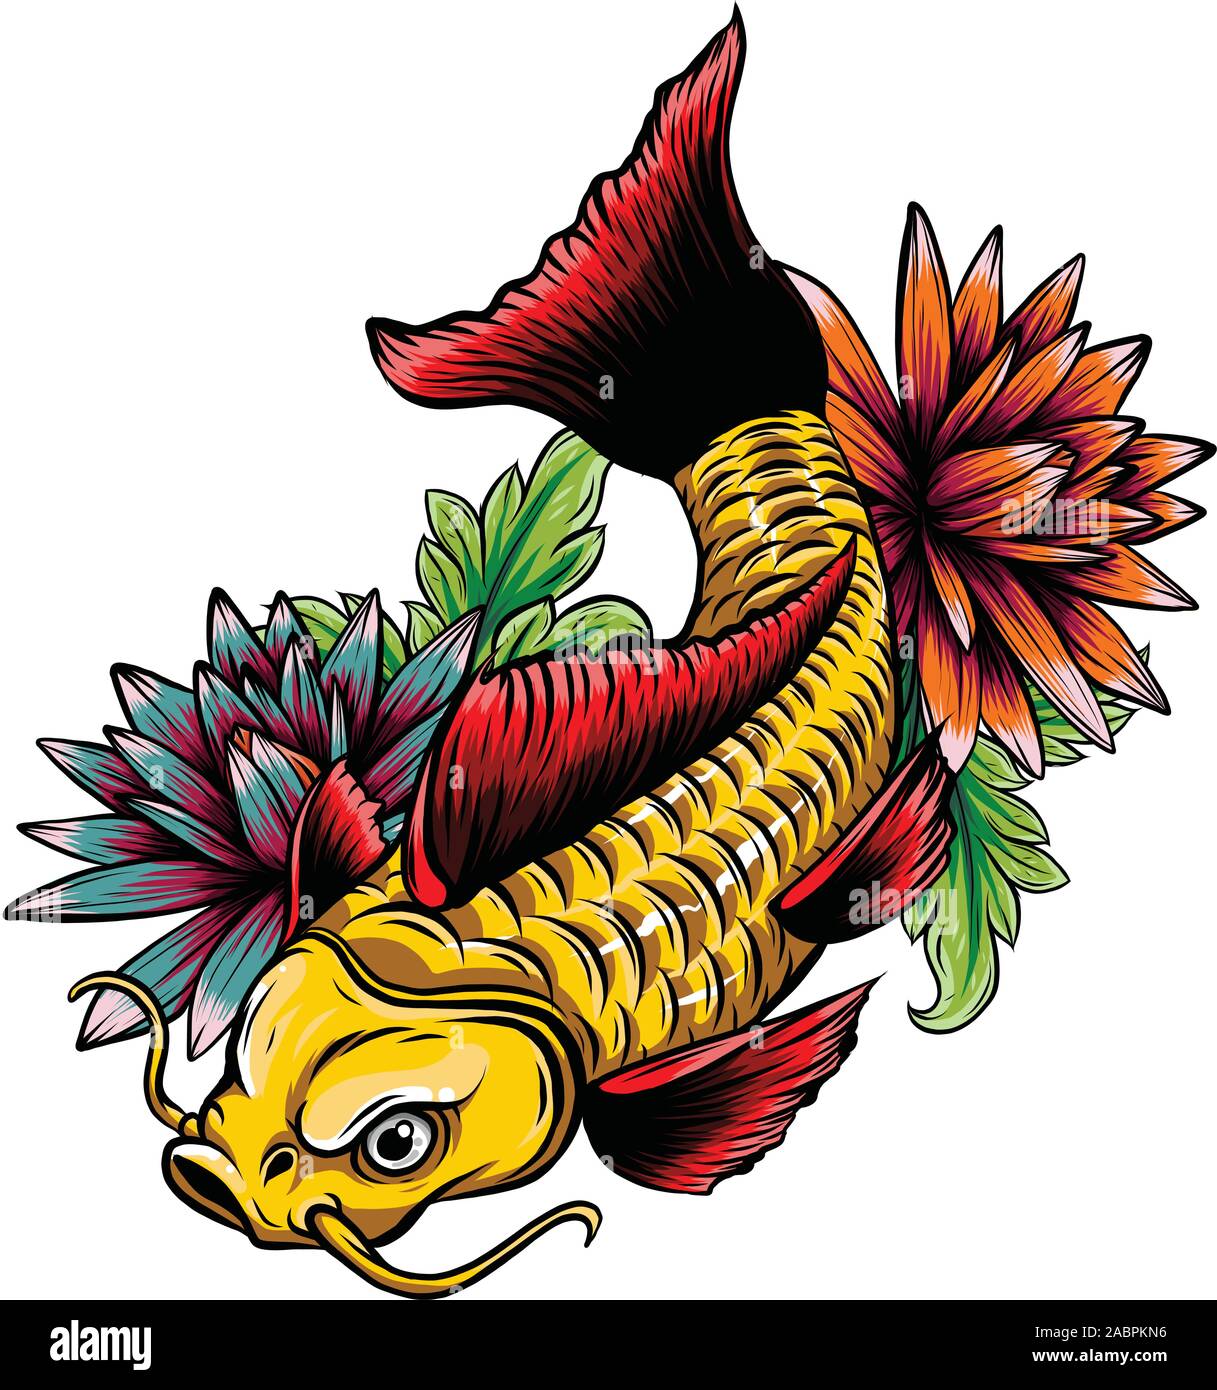 Contorno dibujado a mano koi fish ,oro carpa japonesa con flores de loto dibujo vectorial coloring book Ilustración del Vector